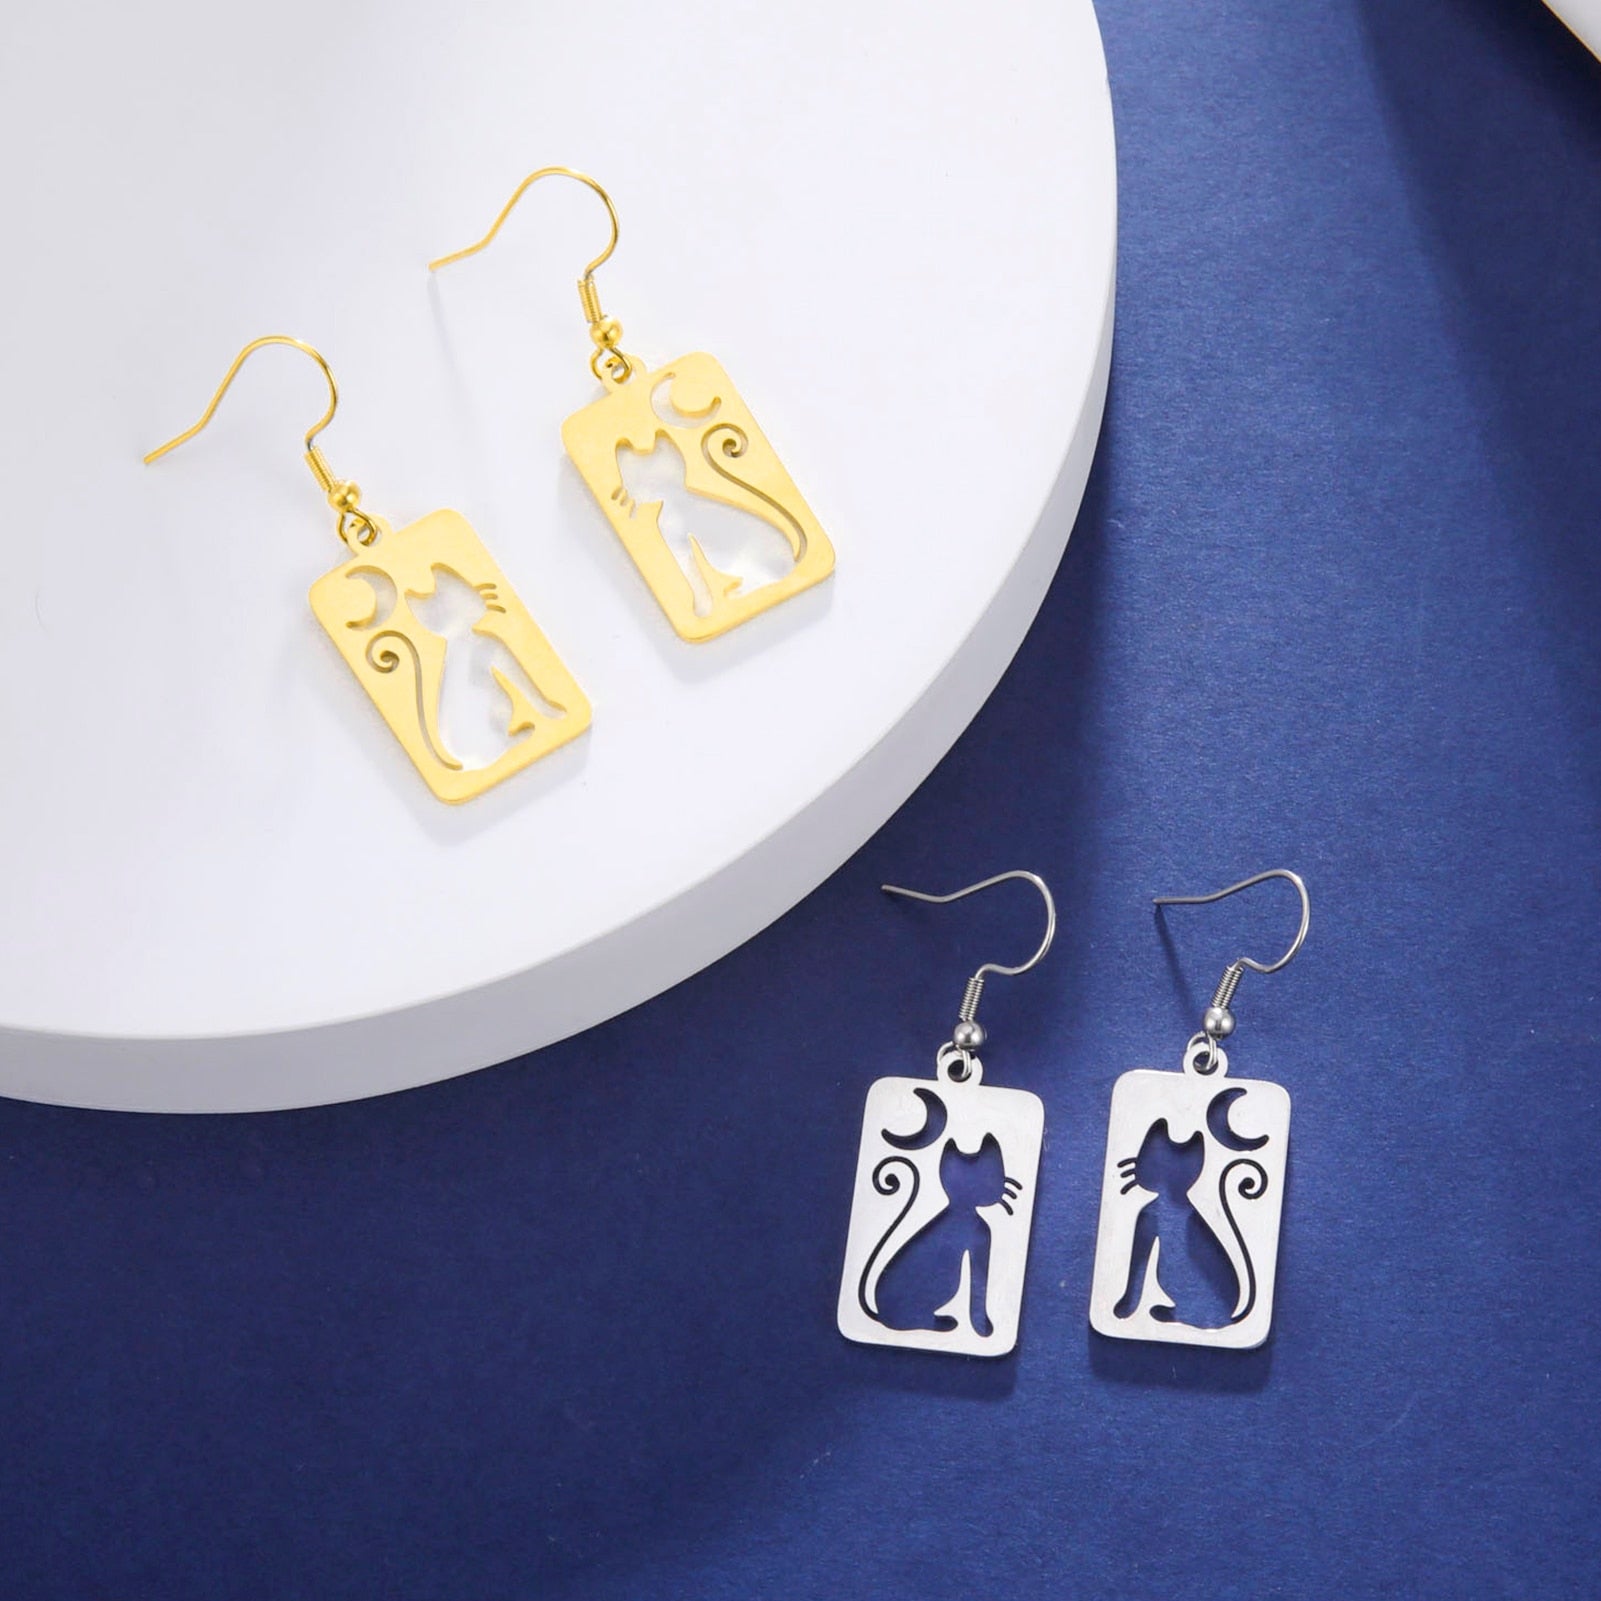 Drop Cat Earrings - Cat earrings